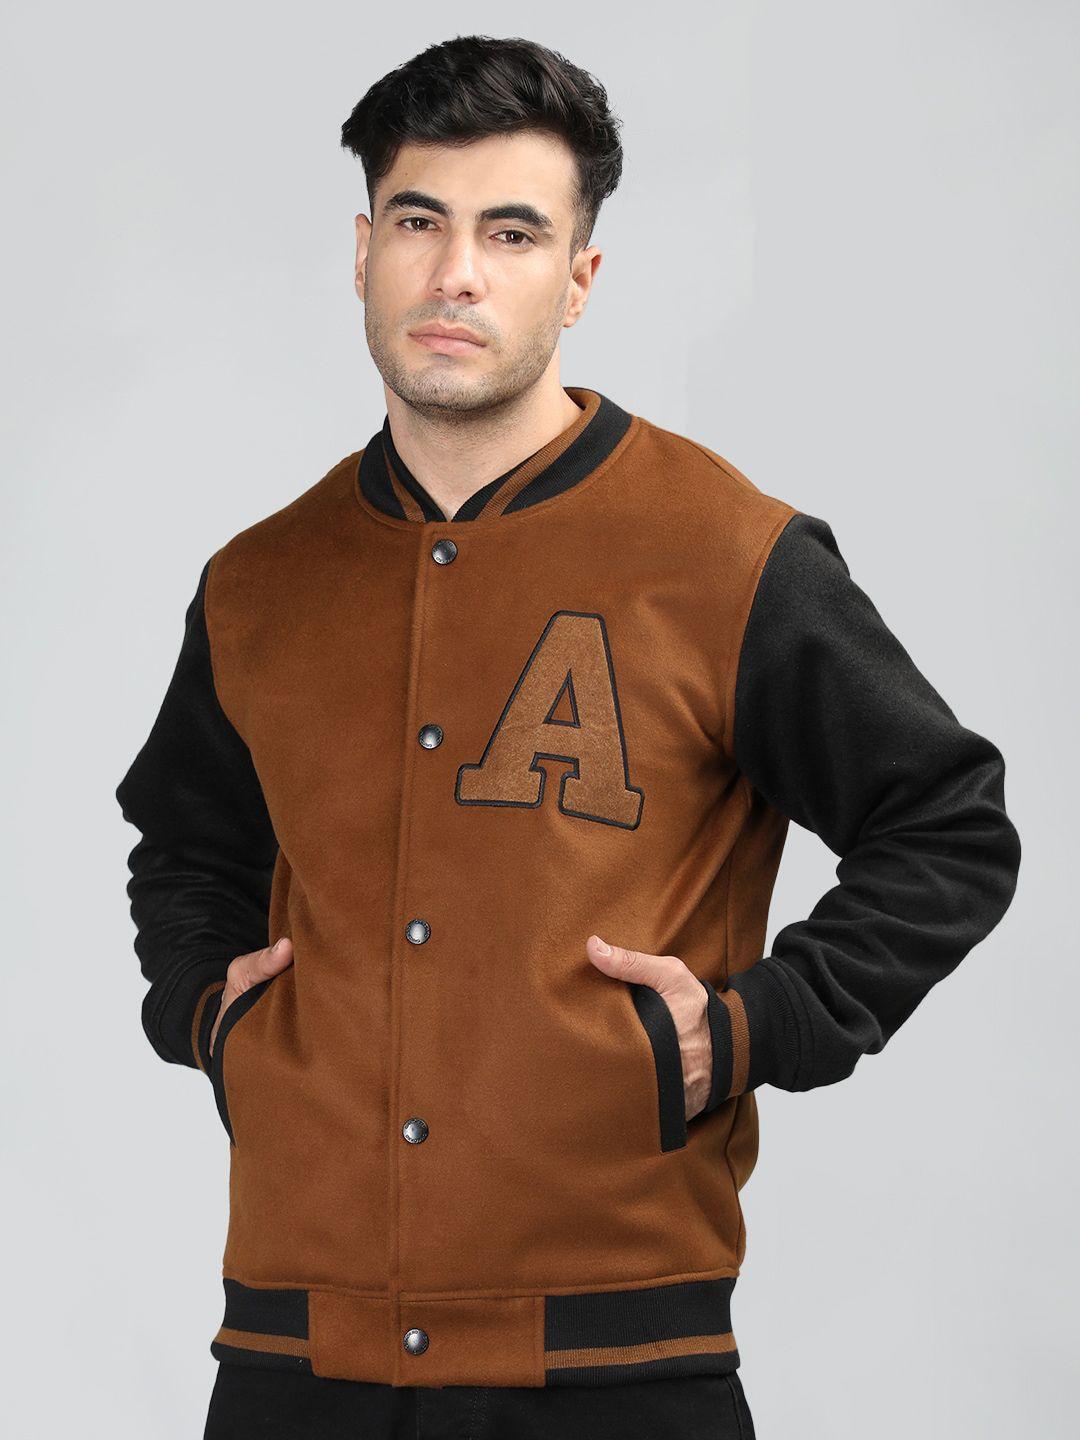 chkokko-colourblocked-woollen-lightweight-outdoor-varsity-jacket